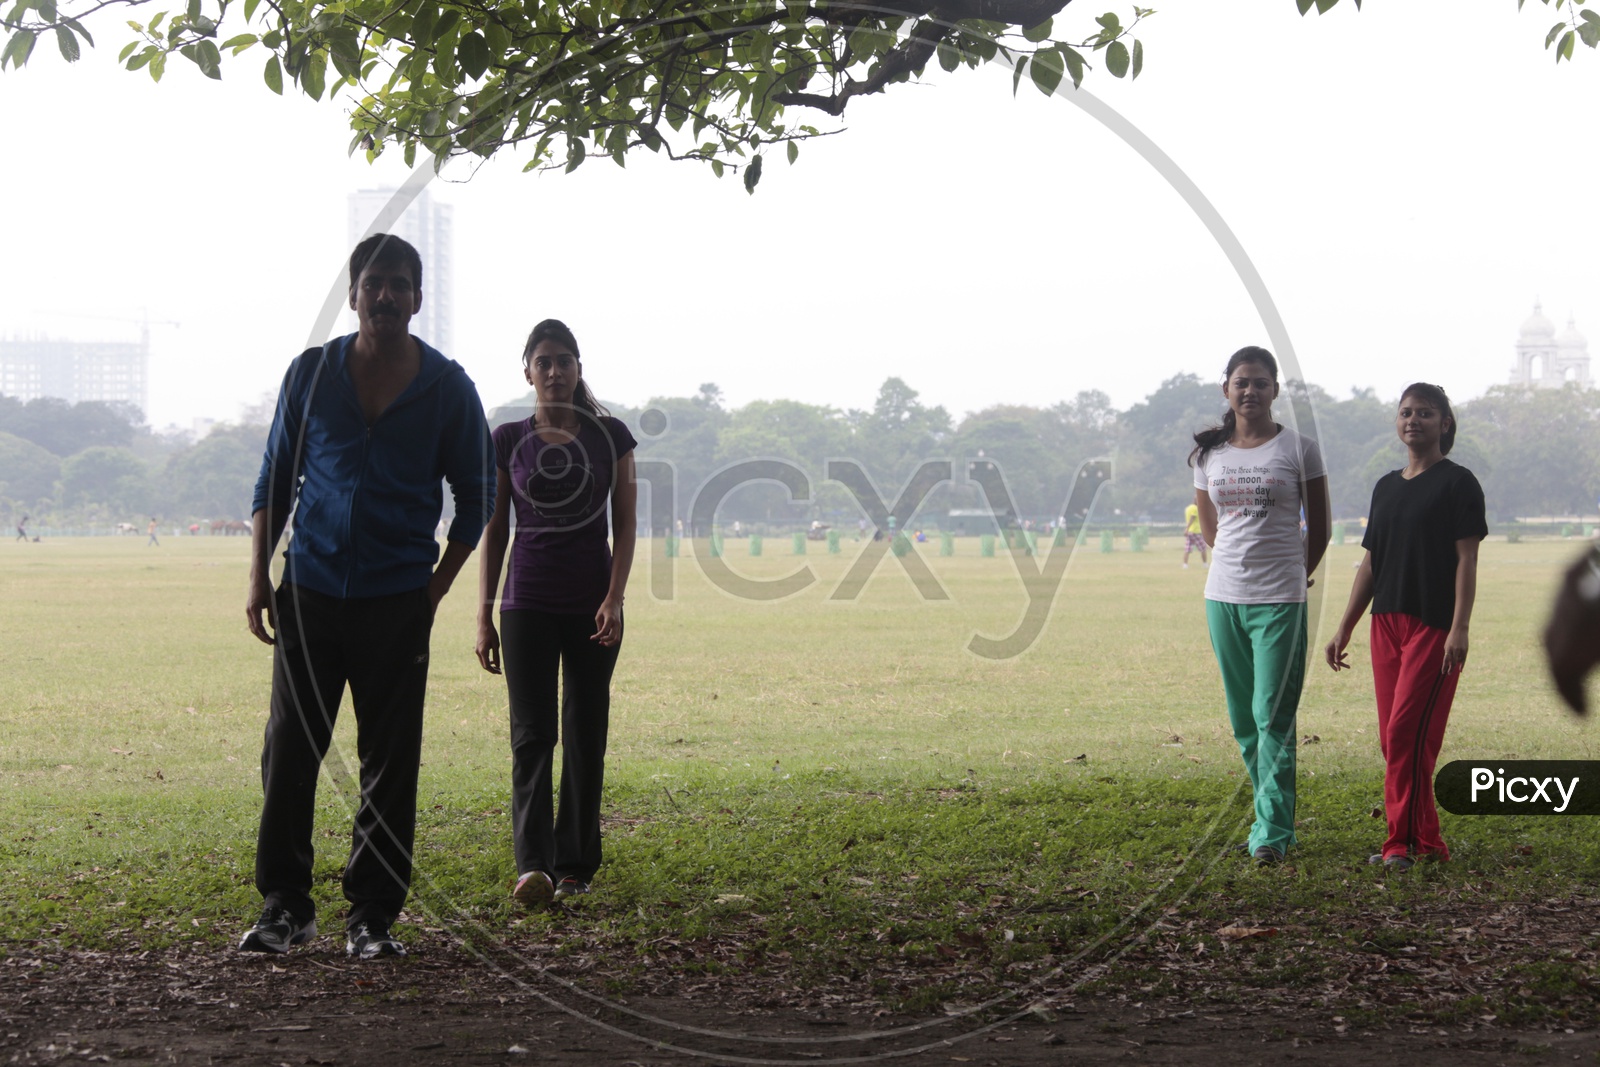 Indian girls wearing running wear going for a jog